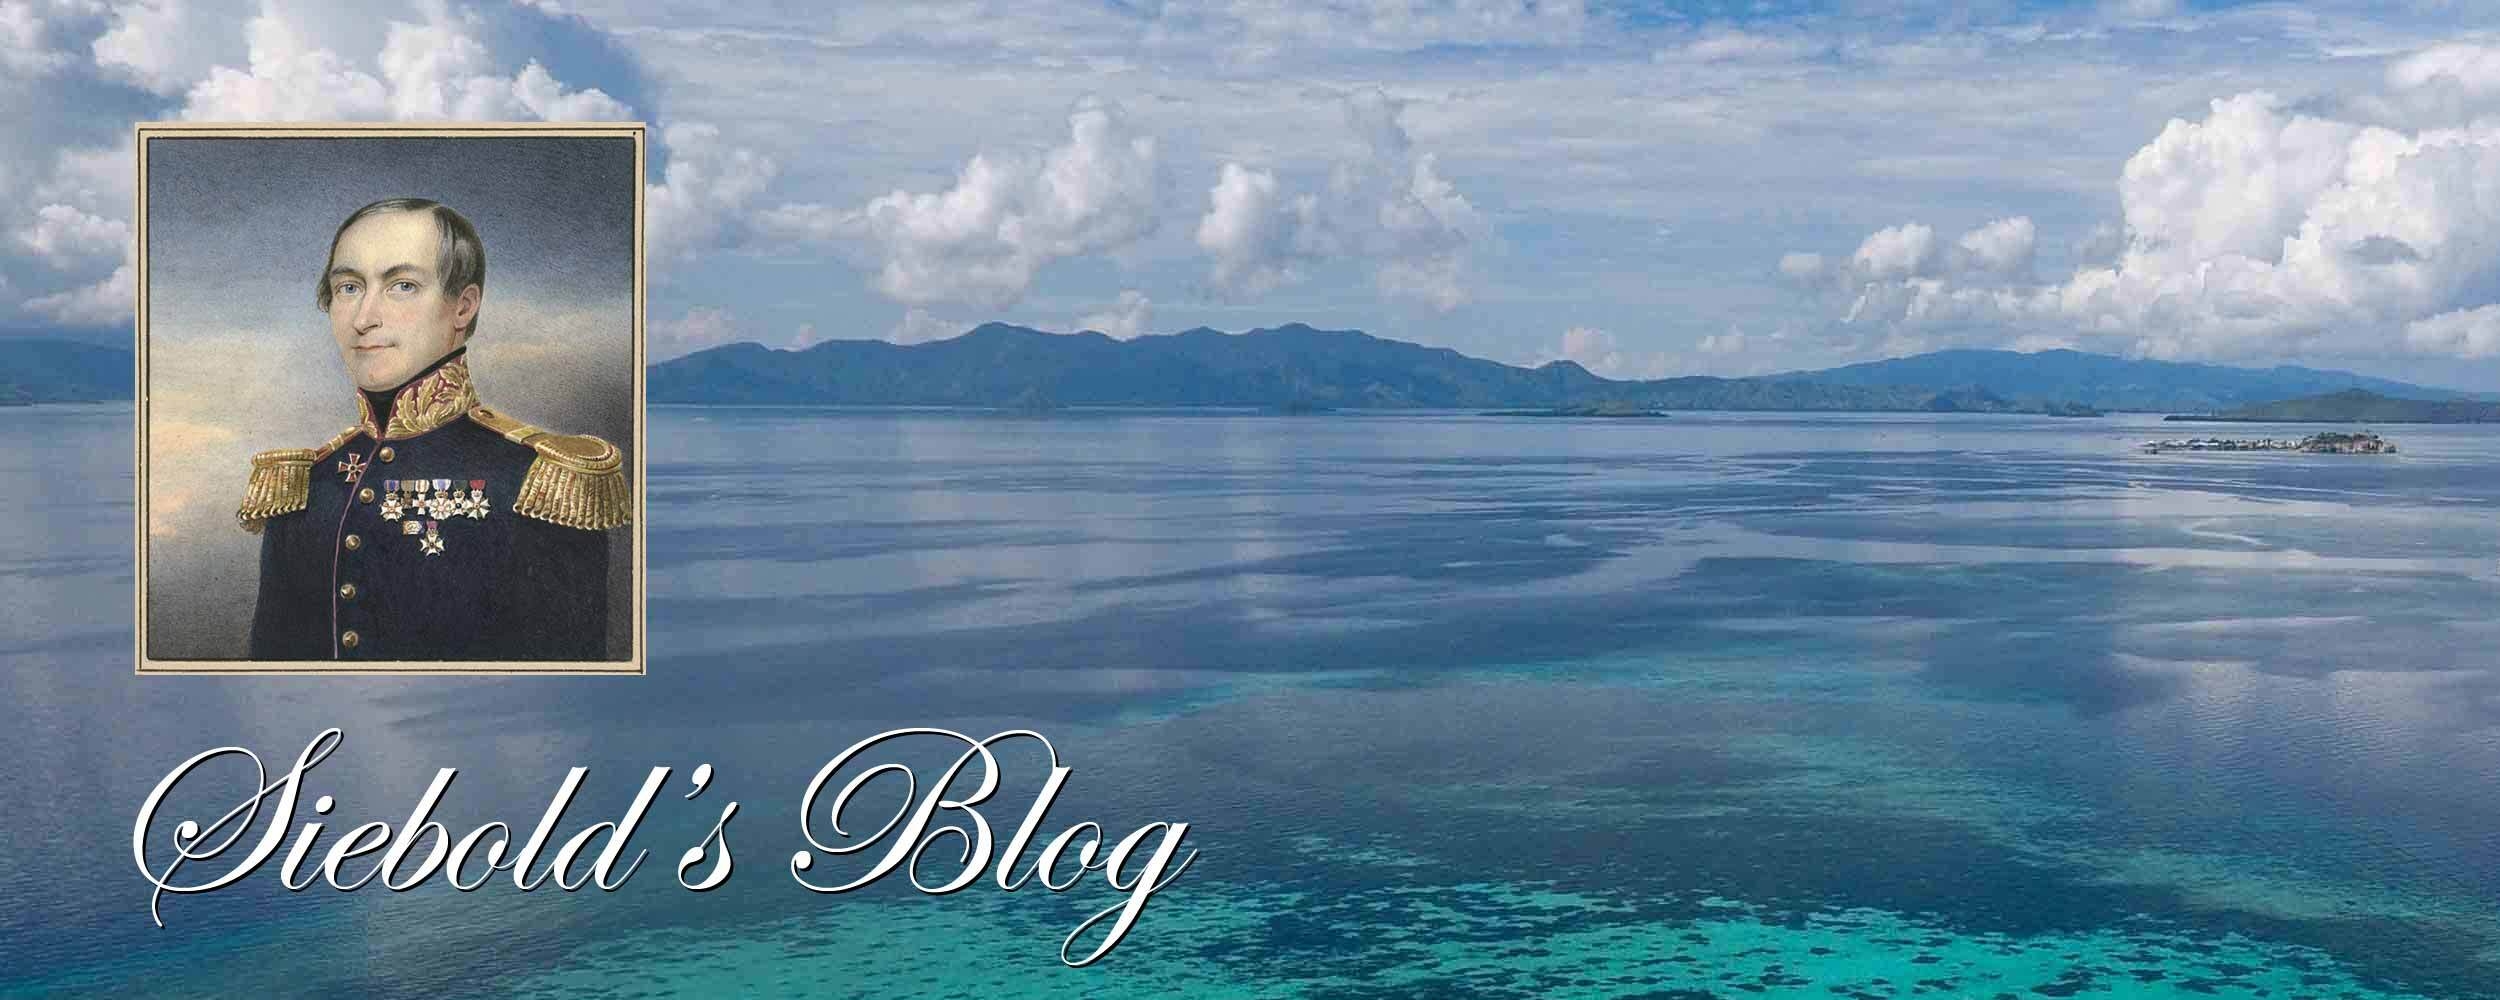 Sieboldblog pulau tudjuh